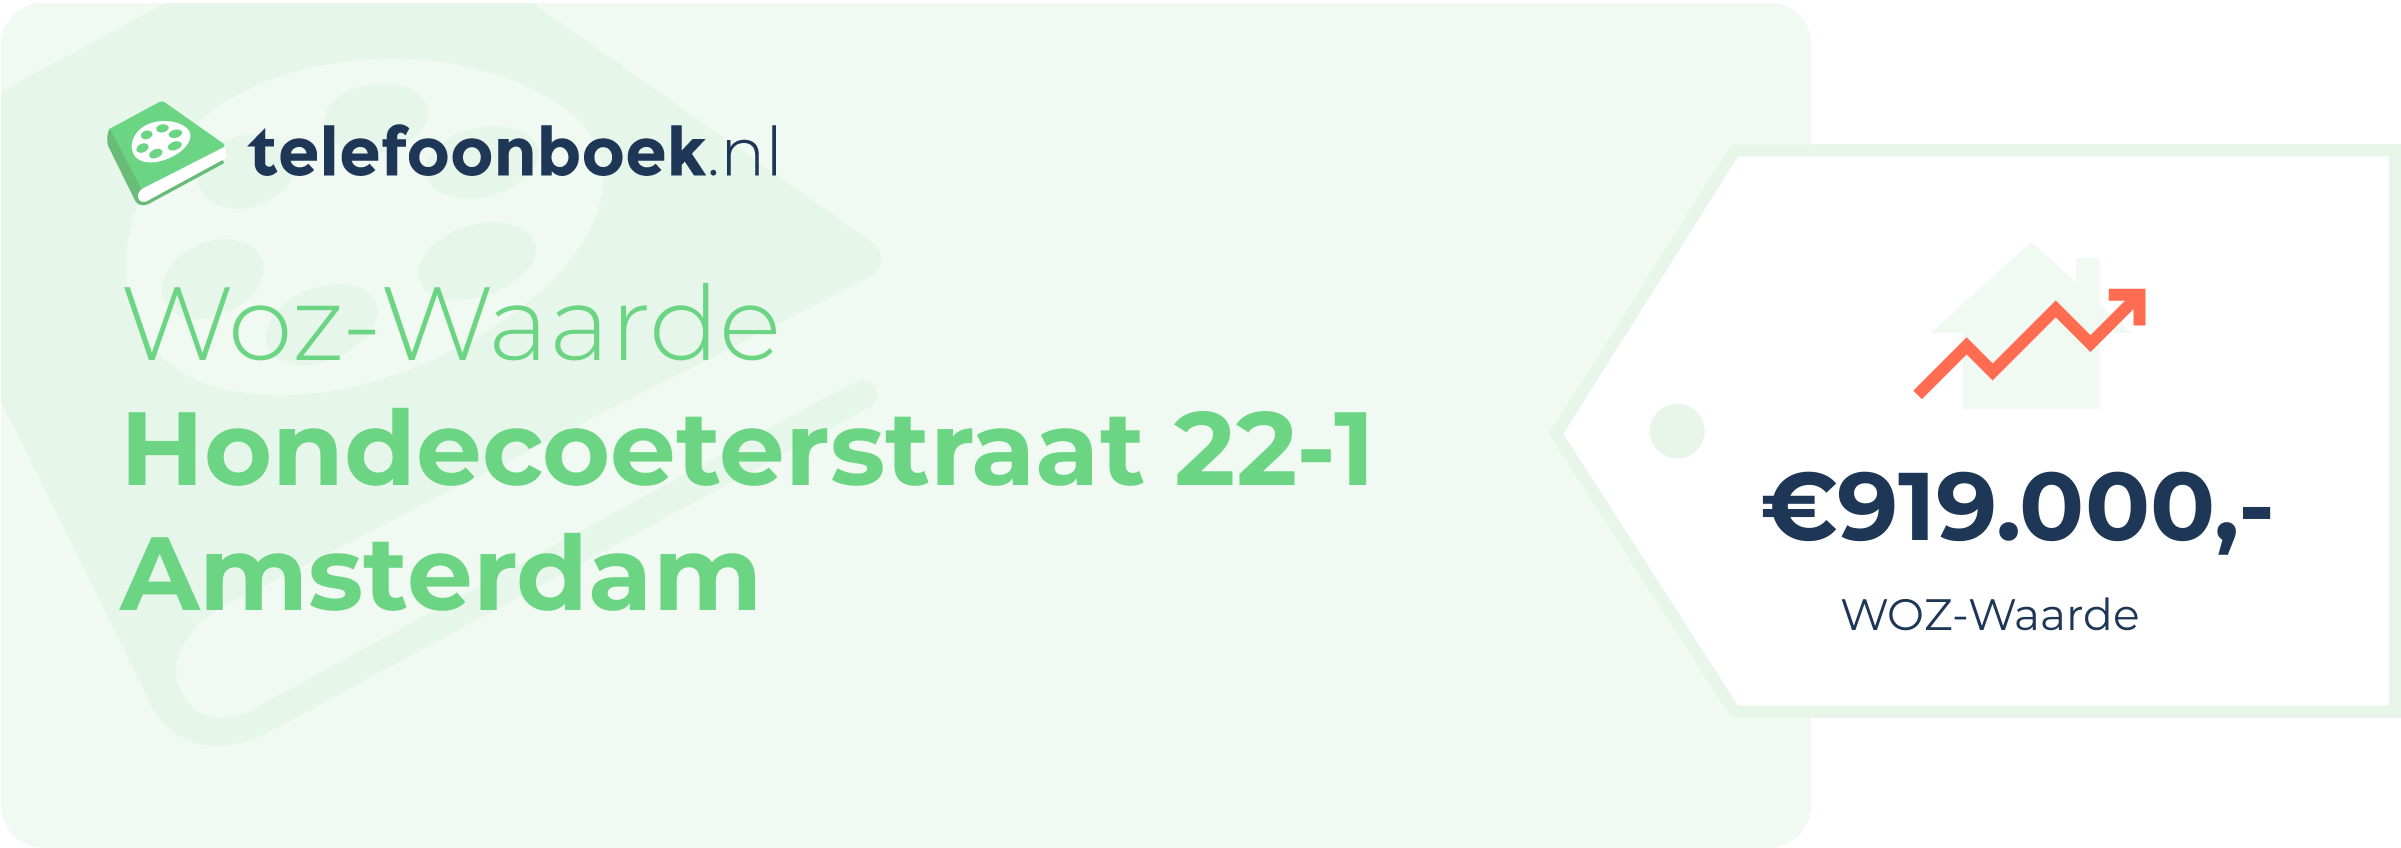 WOZ-waarde Hondecoeterstraat 22-1 Amsterdam